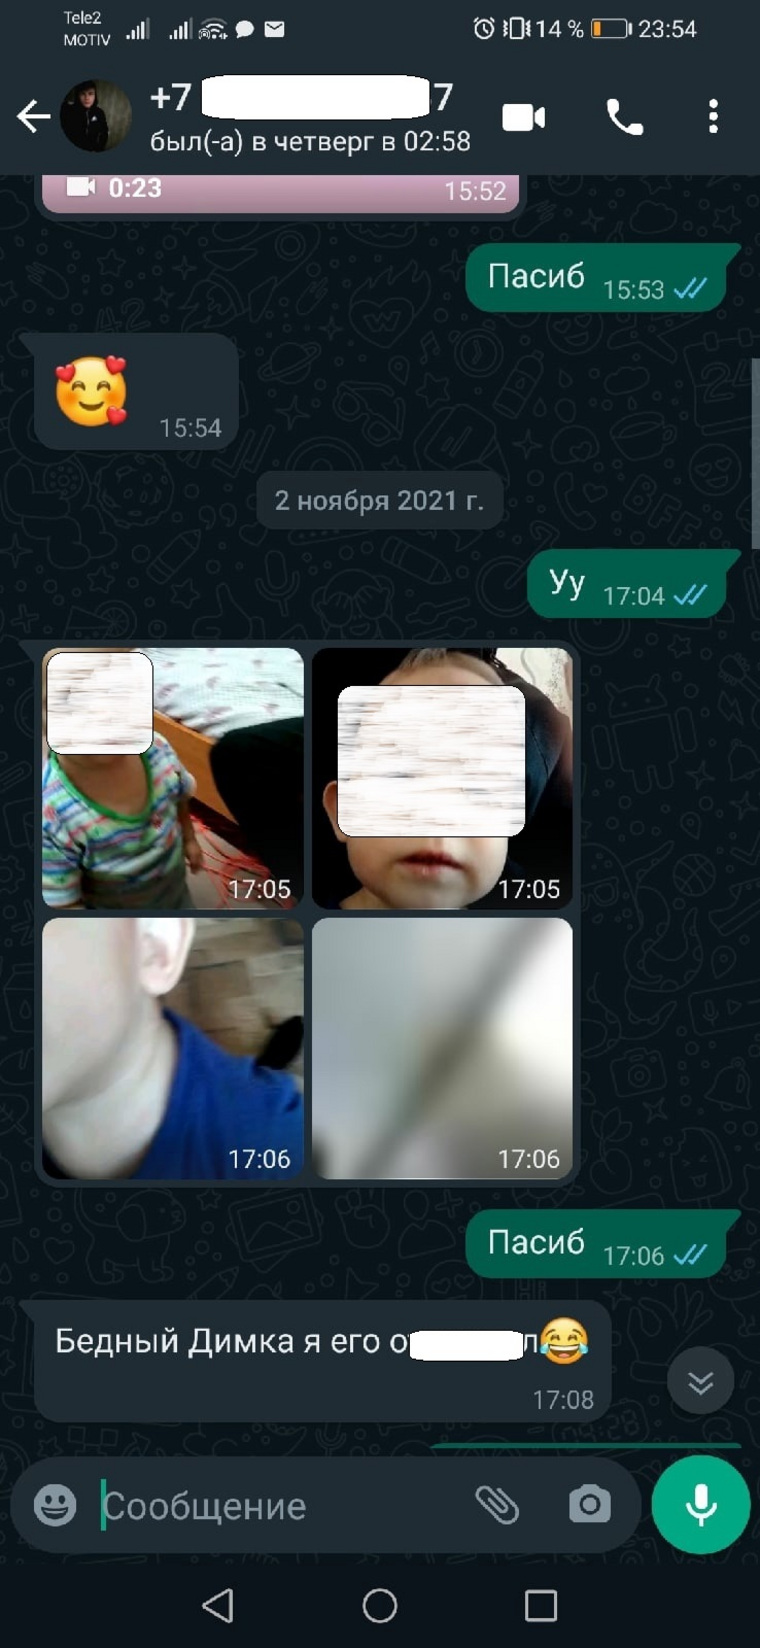 Подросток, который издевался над малышом, сам отправил видео подруге